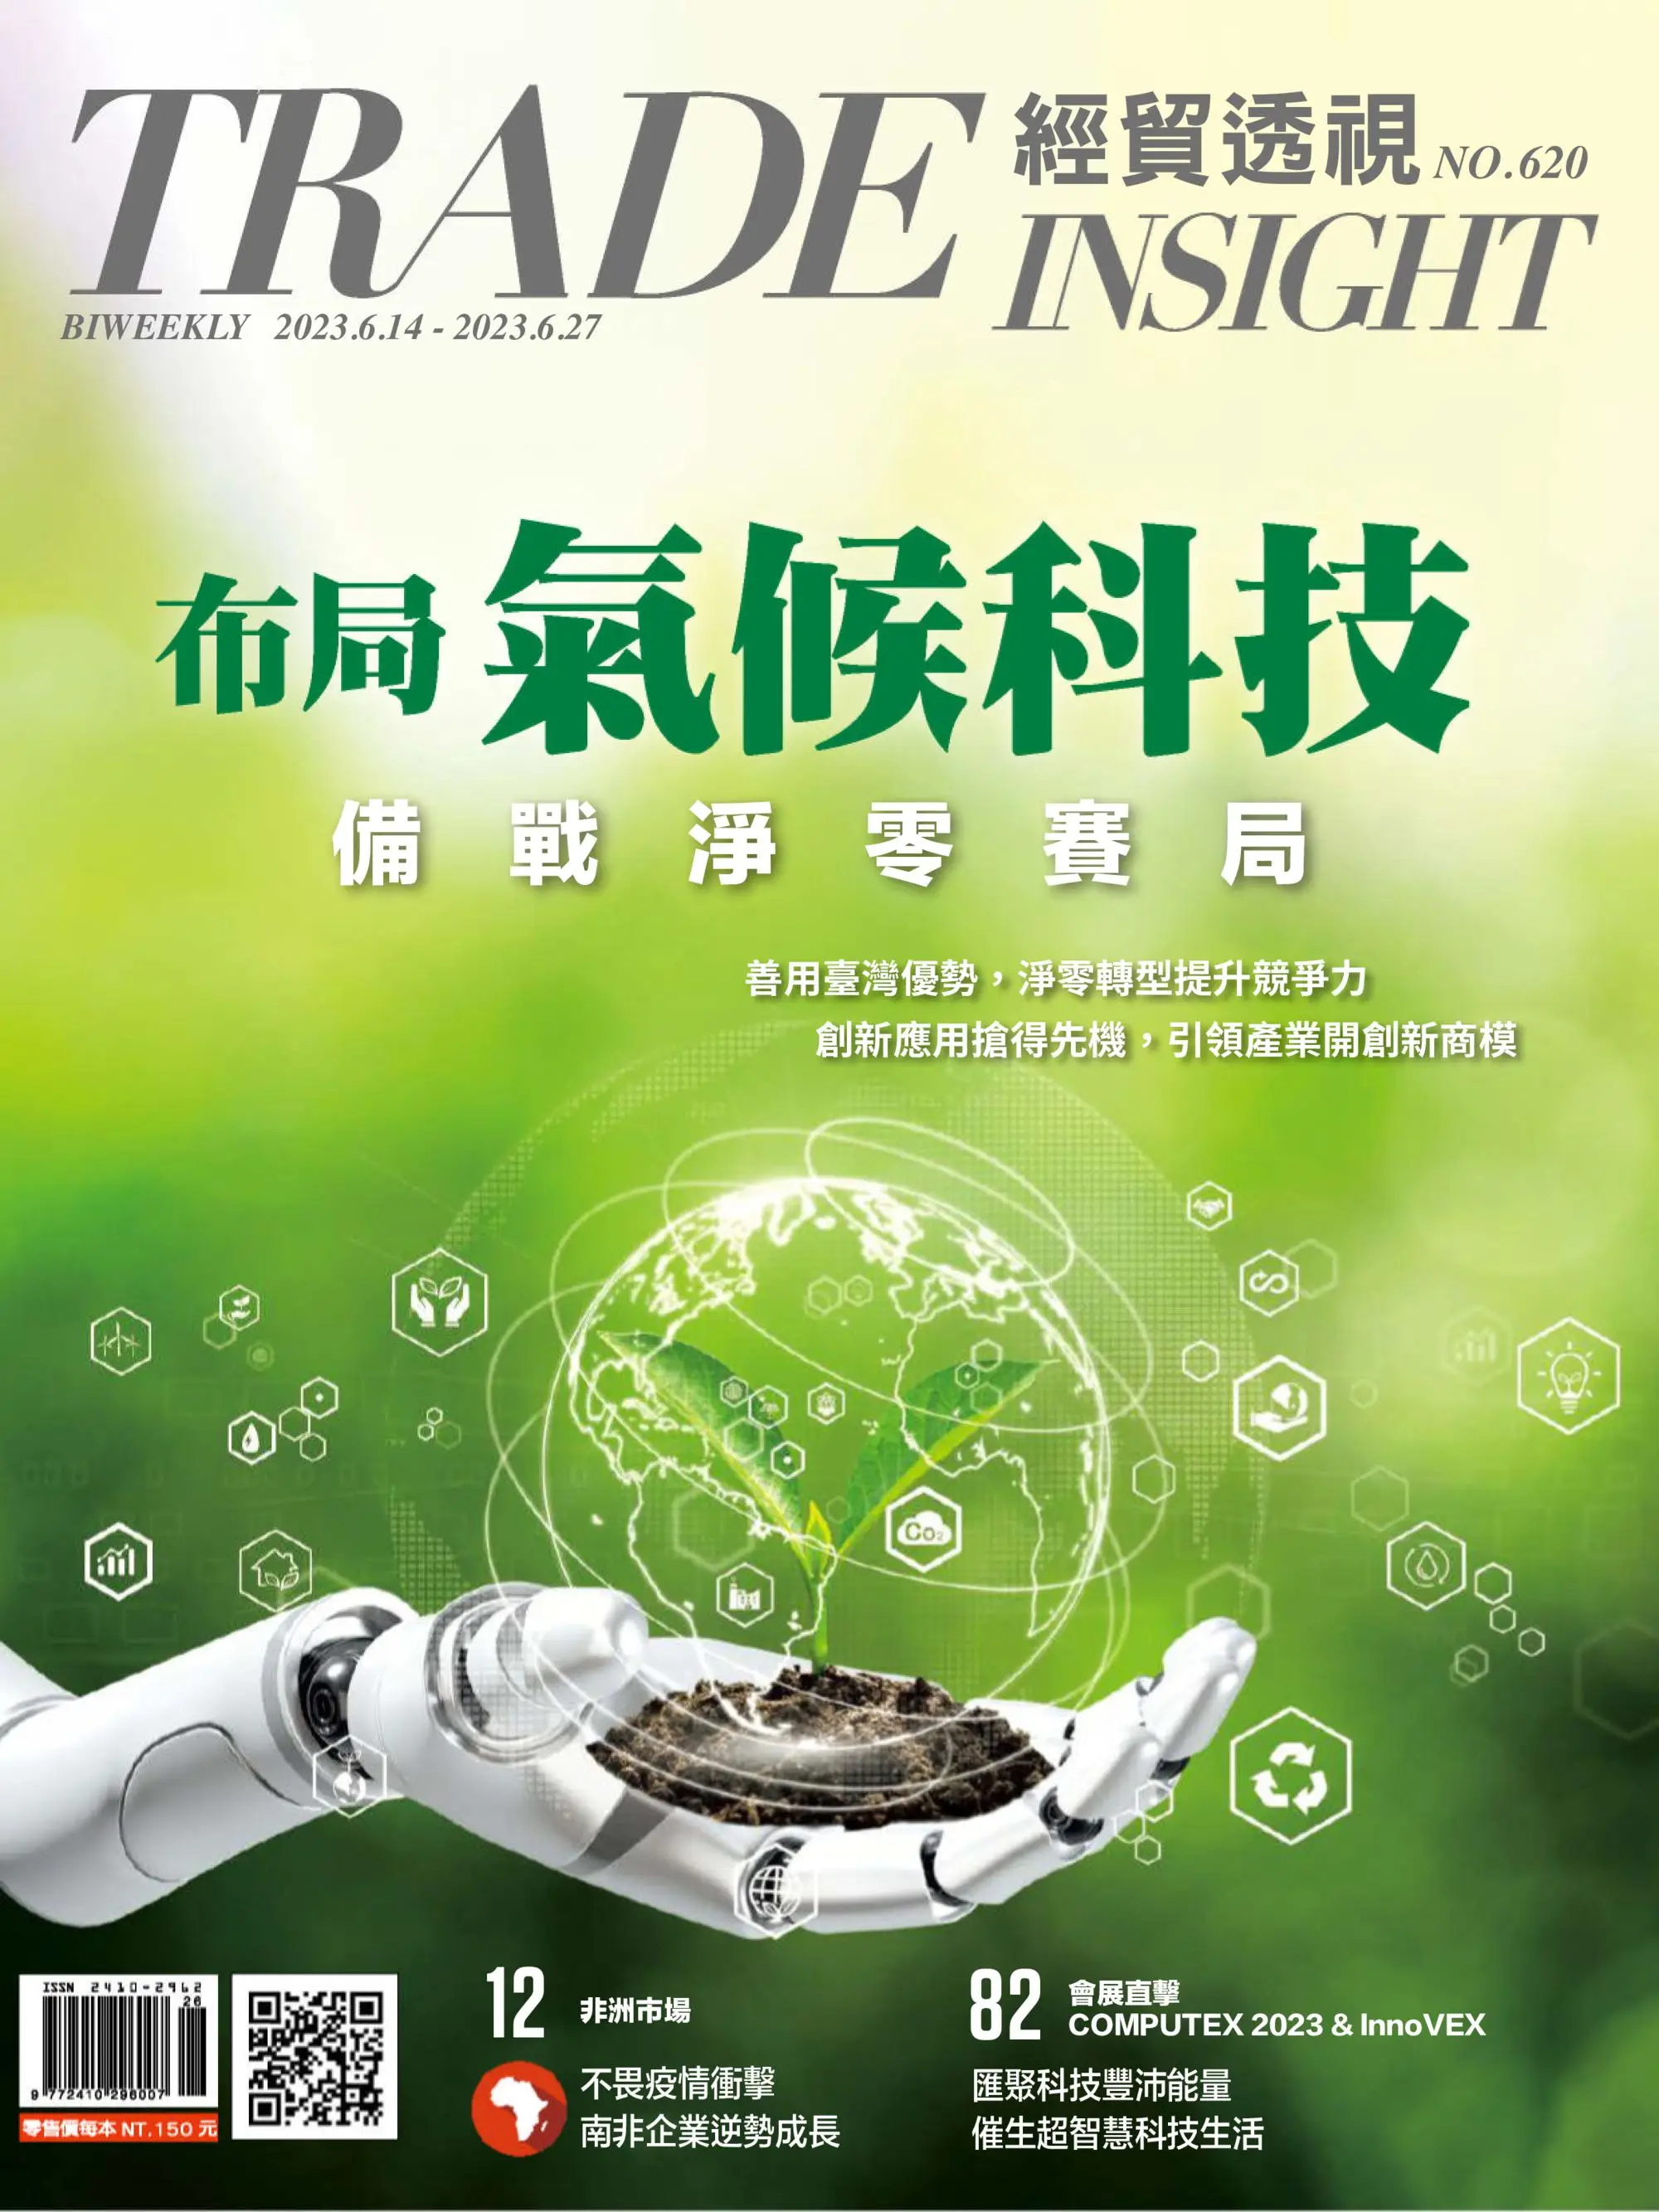 Trade Insight Biweekly 經貿透視雙周刊 2023年6月14日